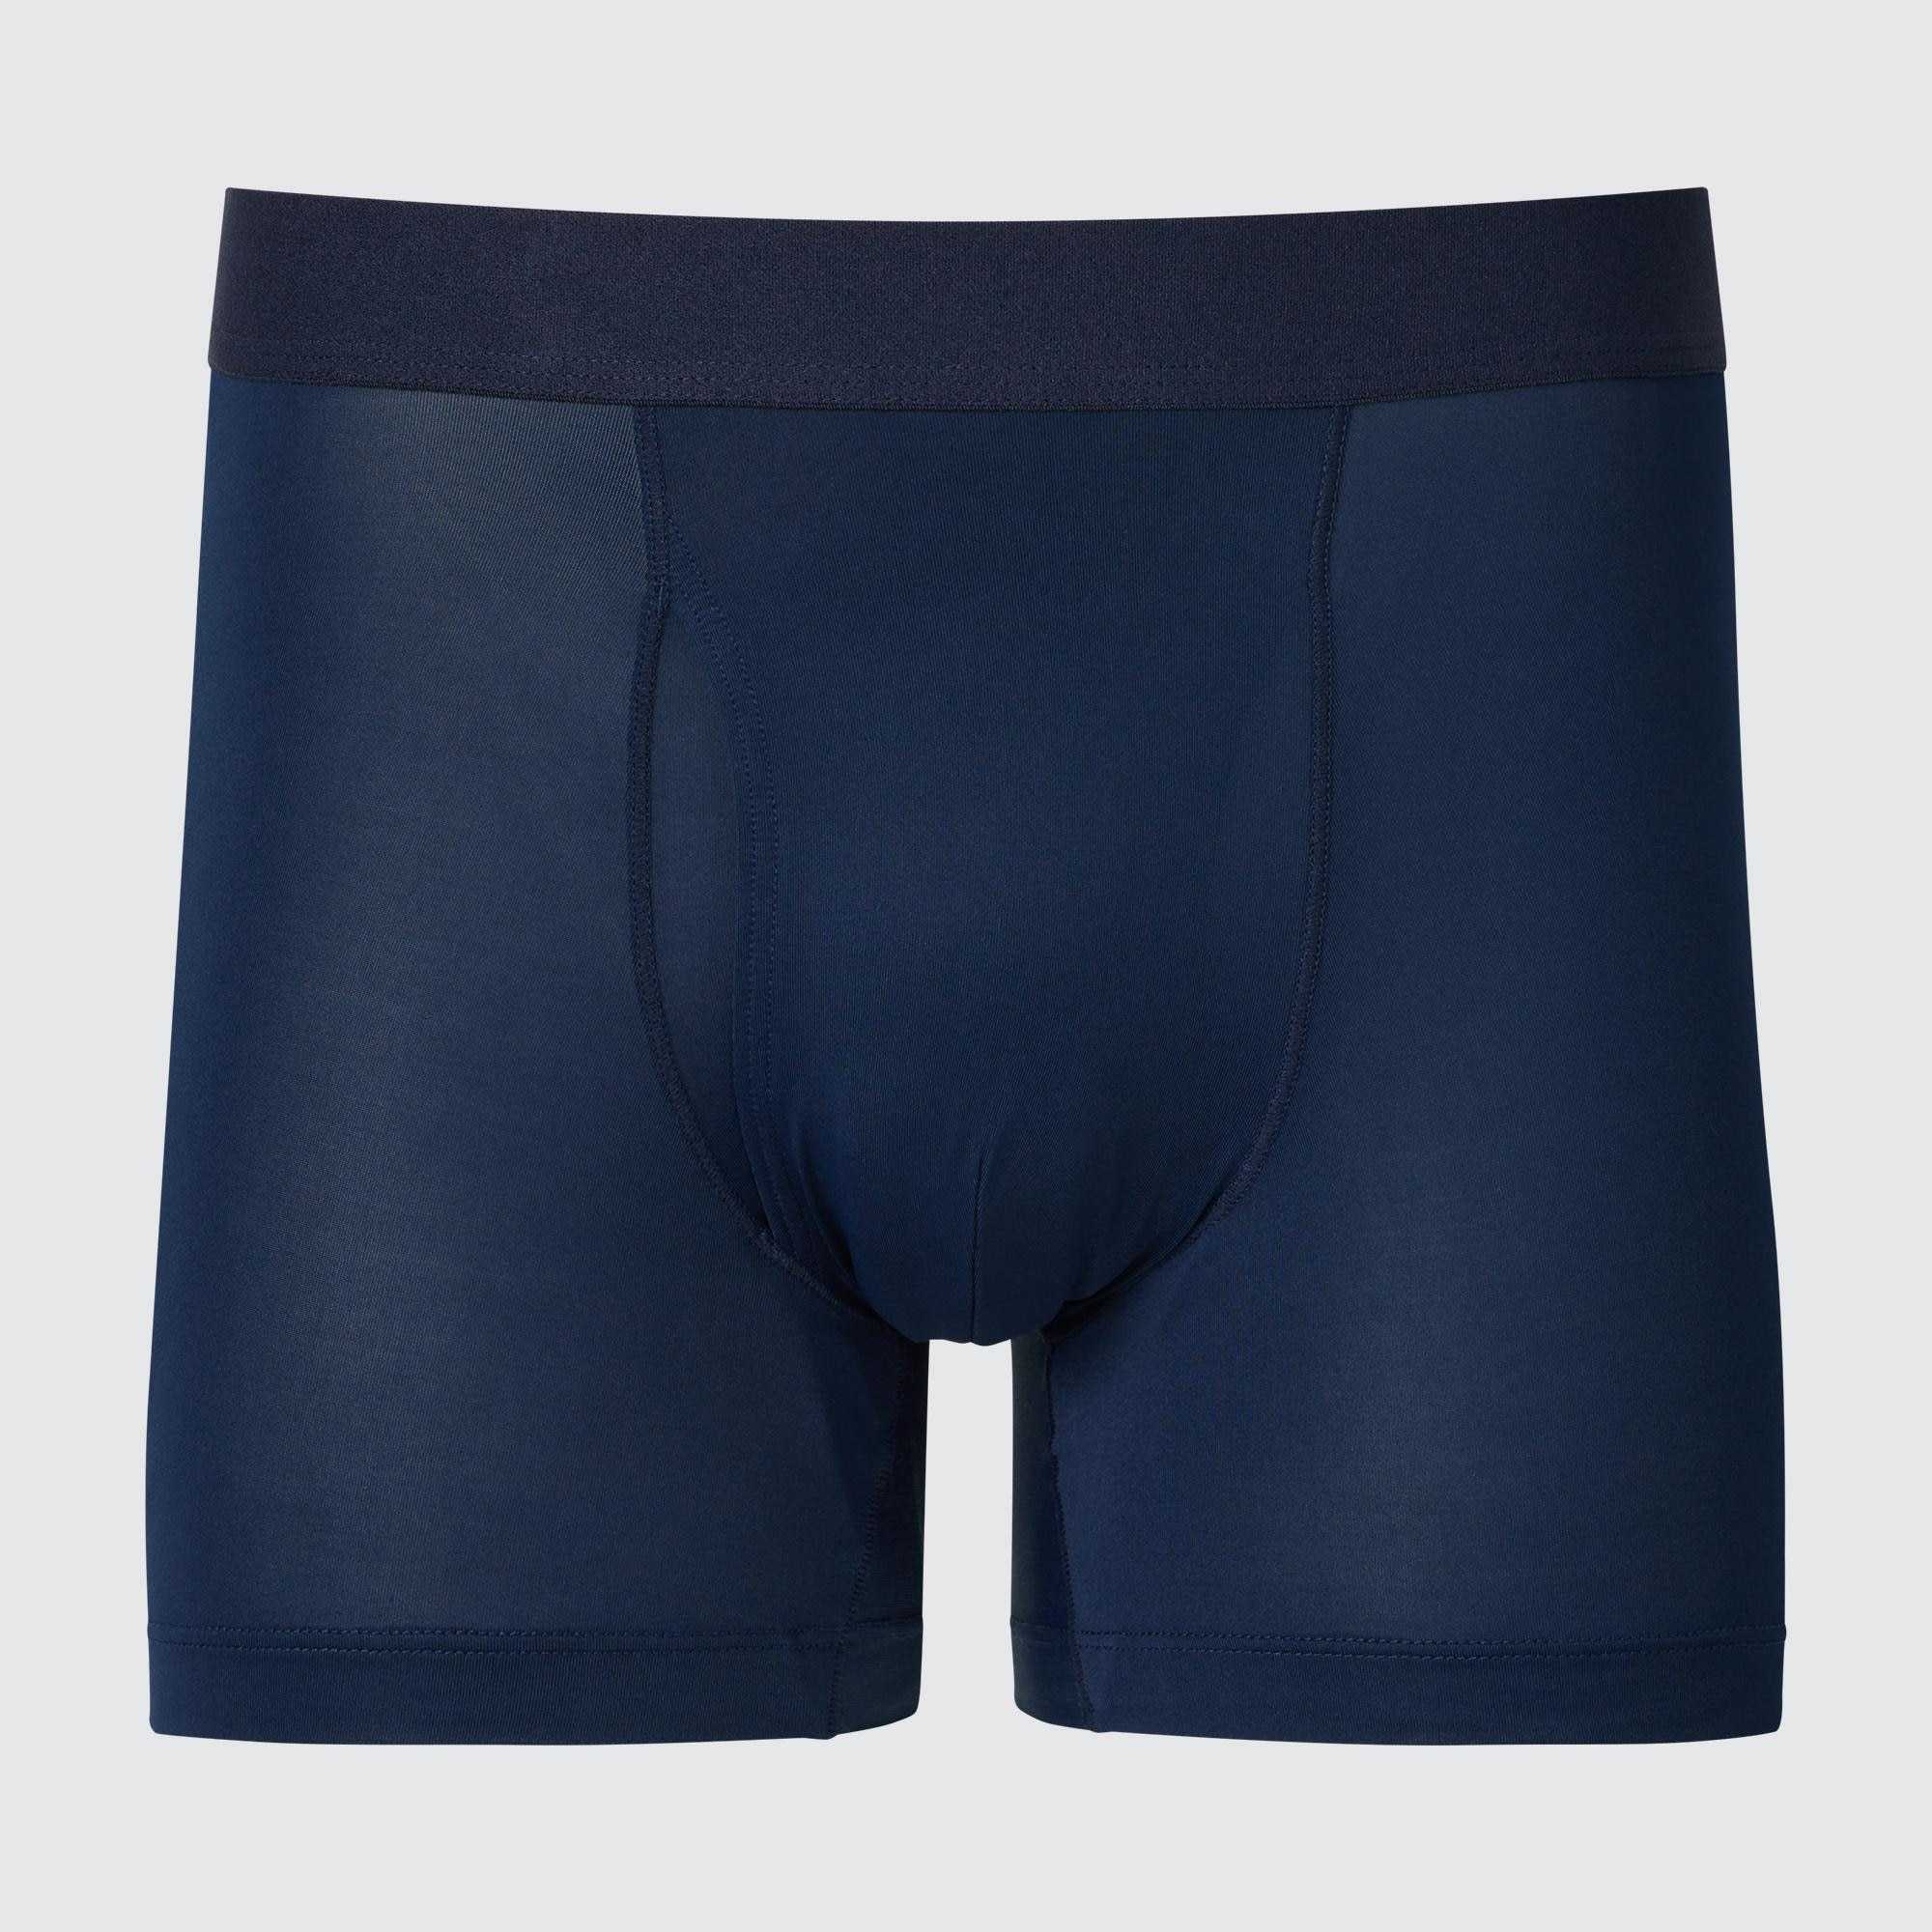 Men's Innerwear Brand DAVID ARCHY Ranked Top 10 Men's Underwear